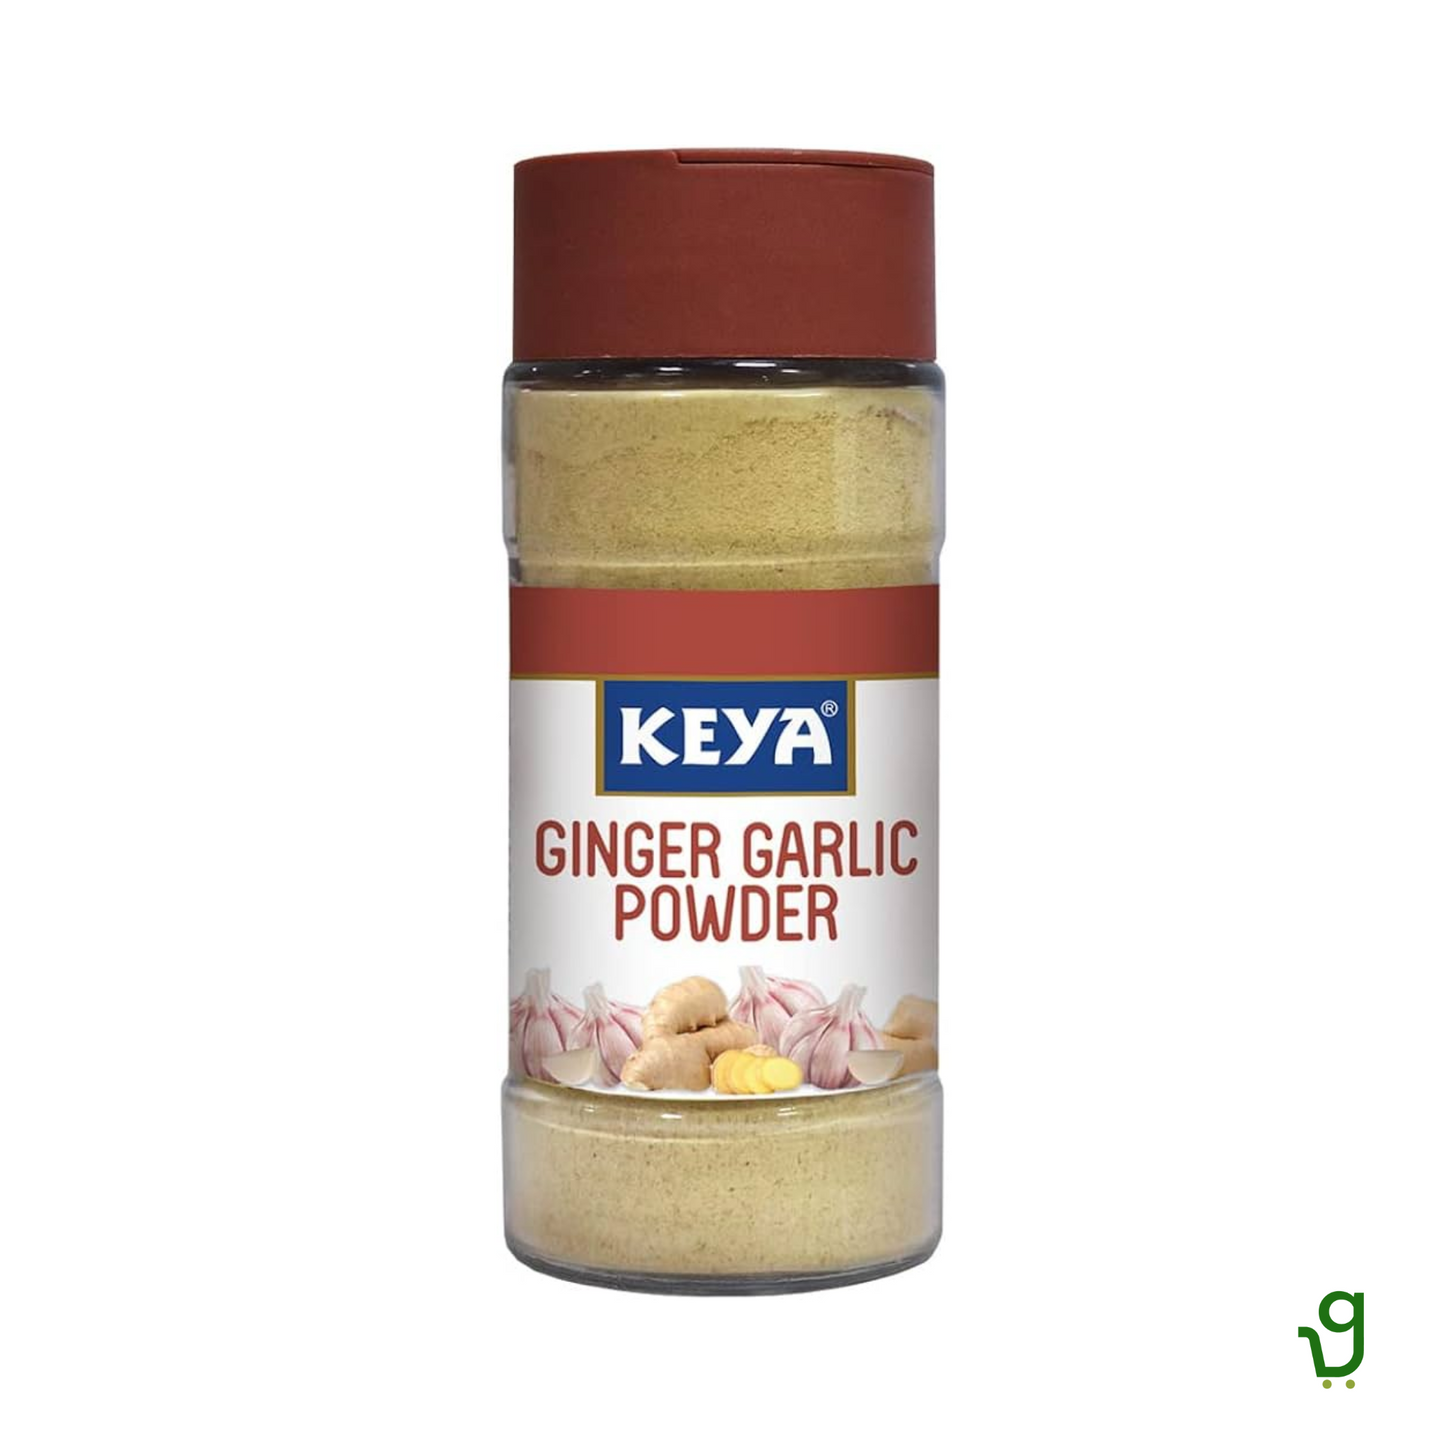 Keya Ginger Garlic Powder 50g